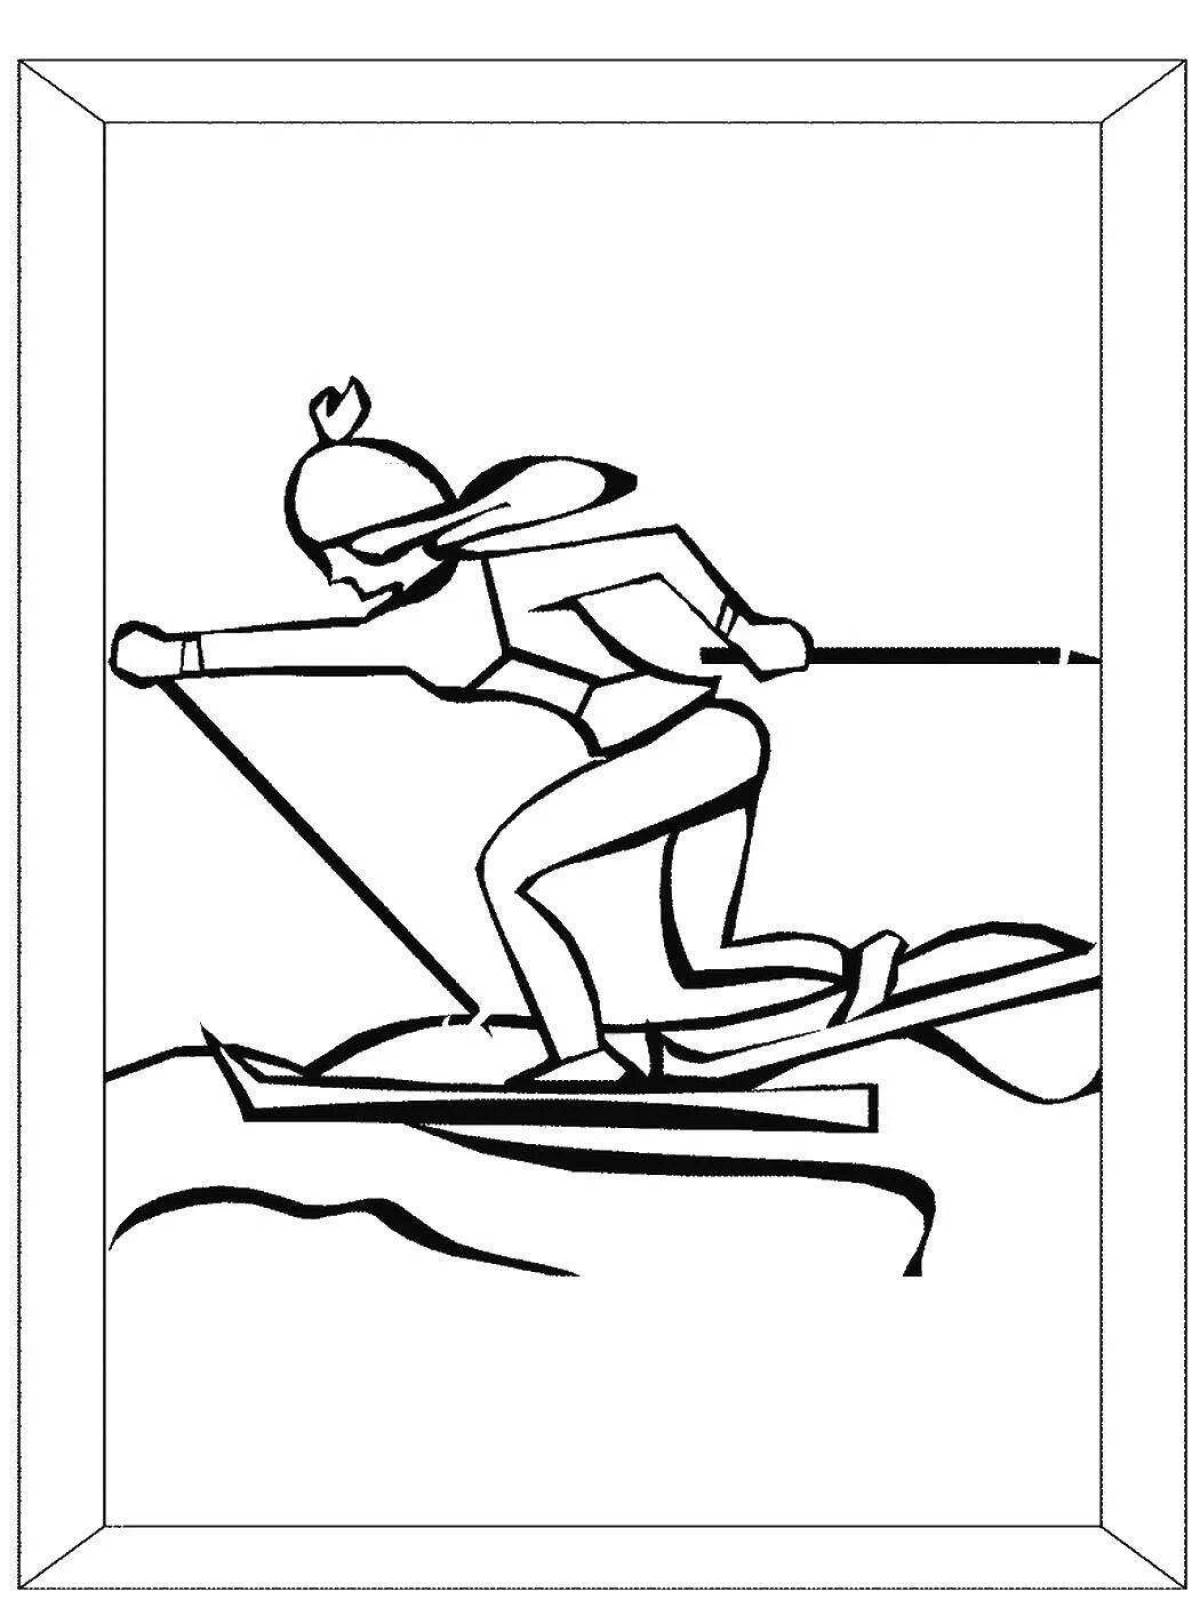 Раскраска гто. Лыжный спорт раскраска. Лыжник раскраска для детей. Раскраска спорт для детей. Лыжи раскраска для детей.